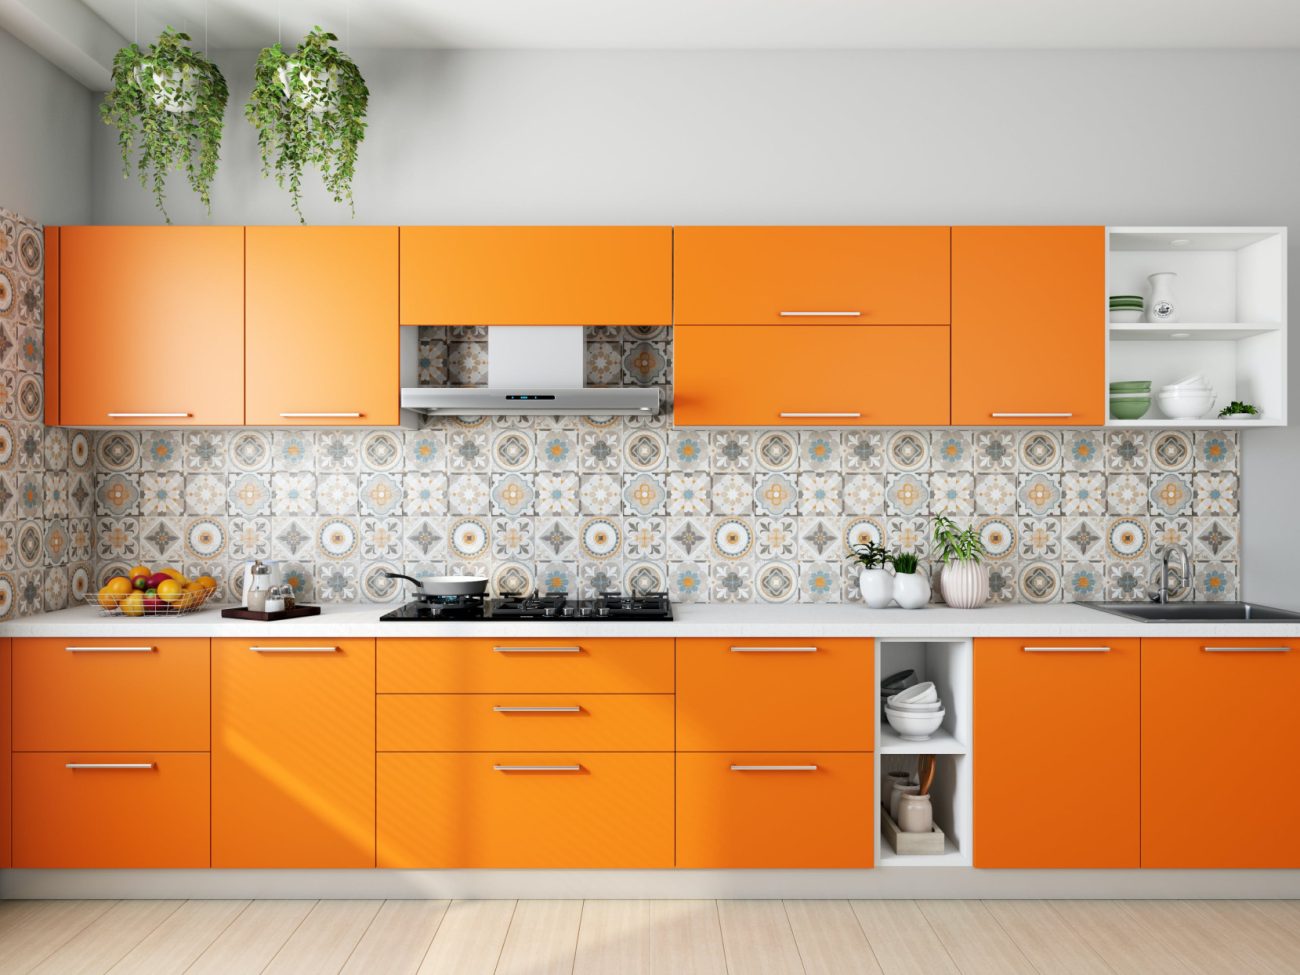 Kitchen with orange furniture